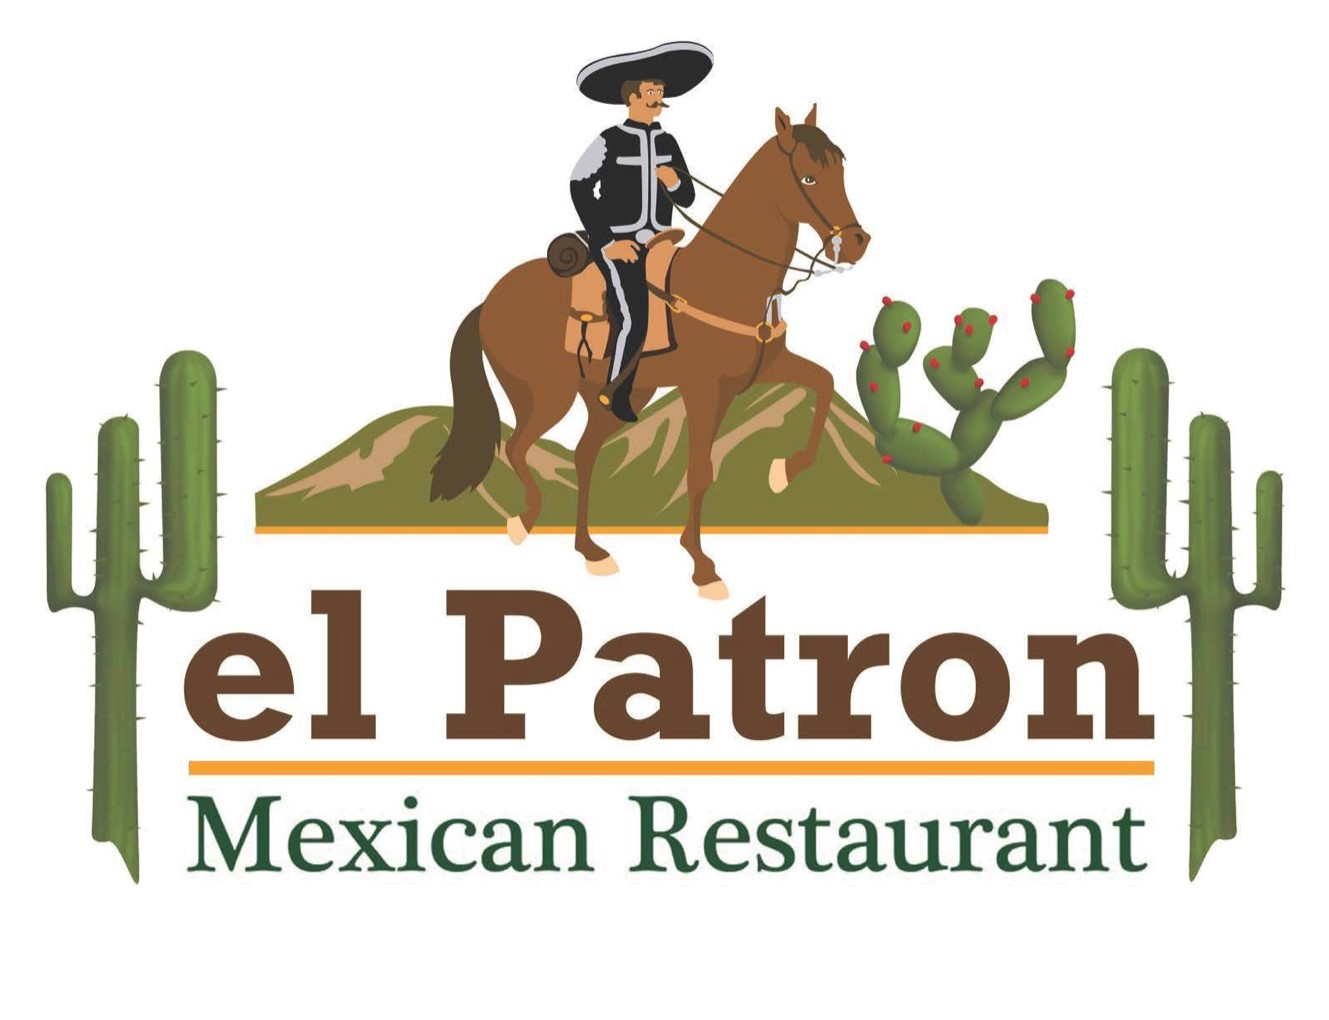 el Patron Mexican Restaurant